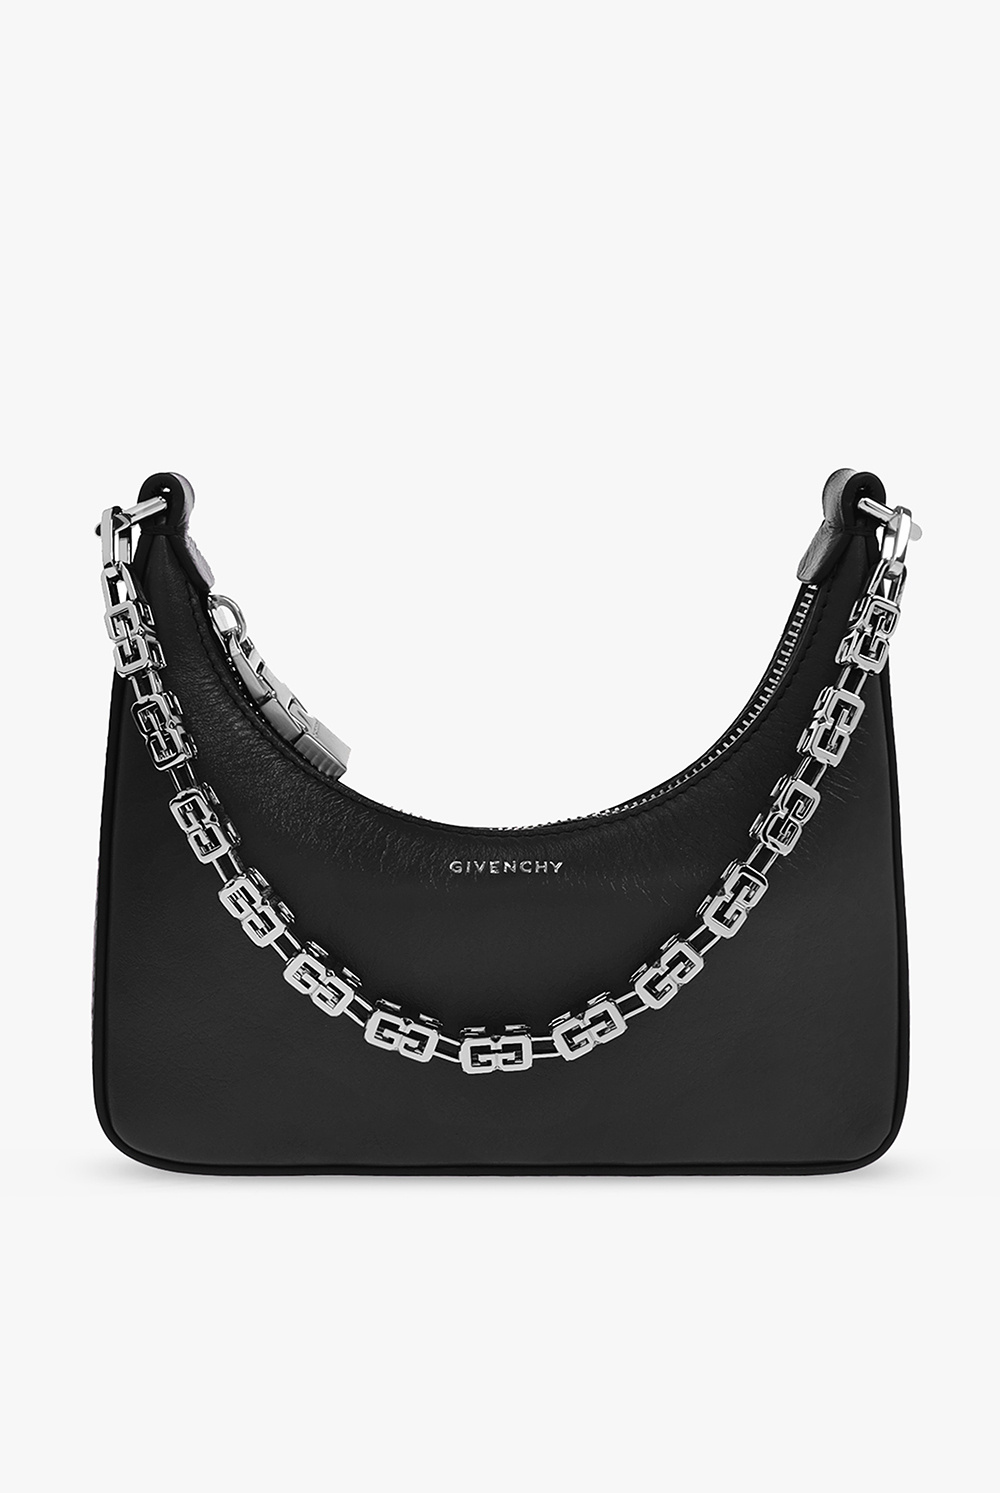 Givenchy ‘Moon Cutout Mini’ hobo bag